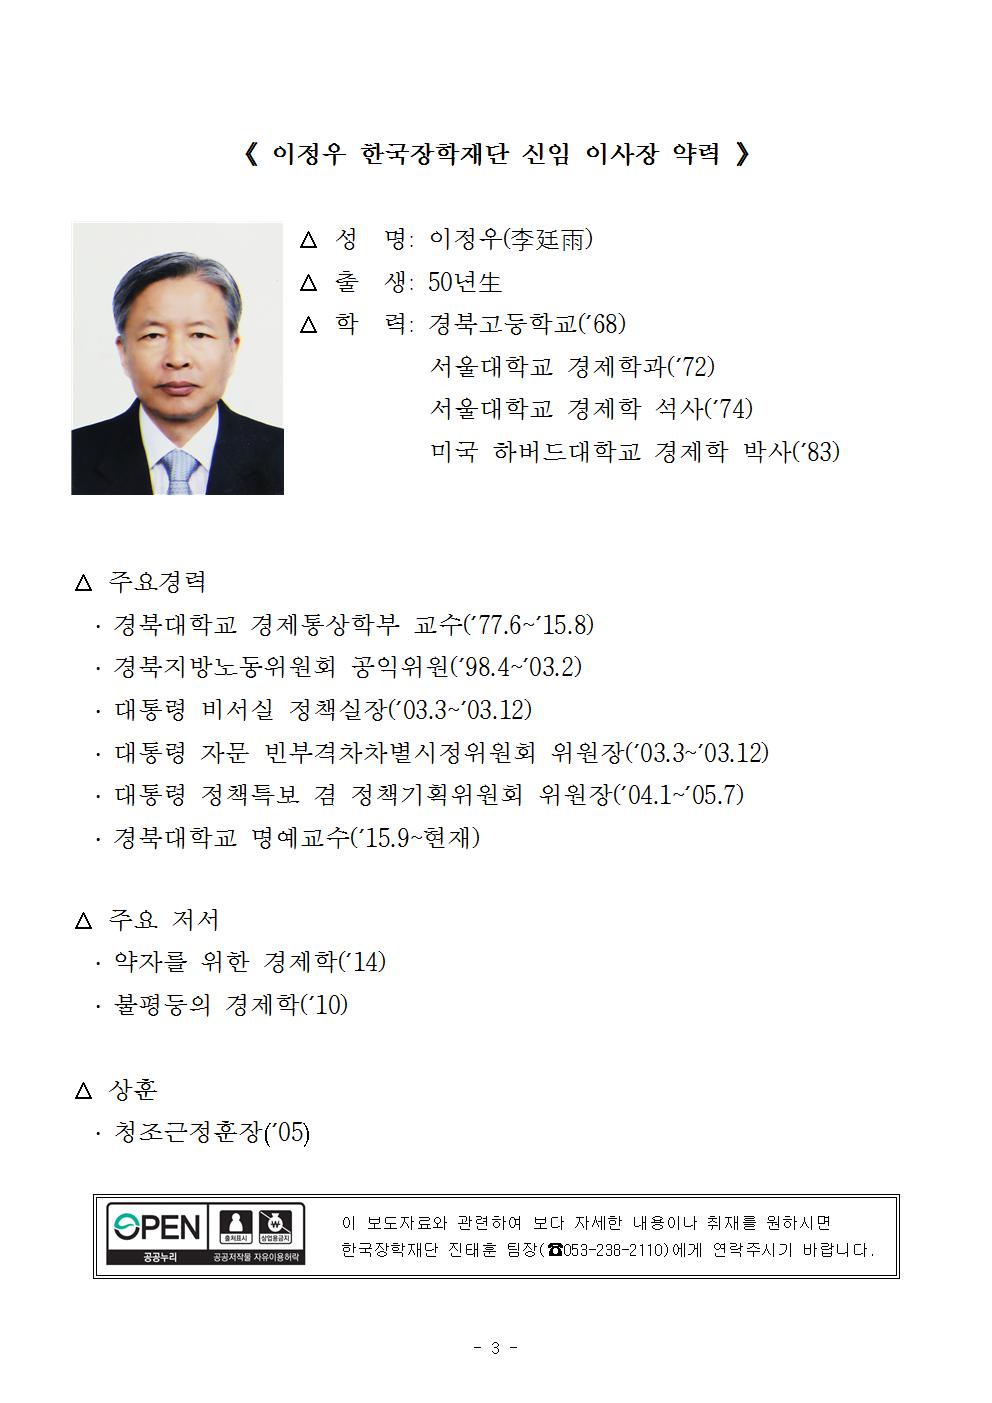 08-13(월)[보도자료] 제4대 한국장학재단 이사장 이정우 선임003.jpg